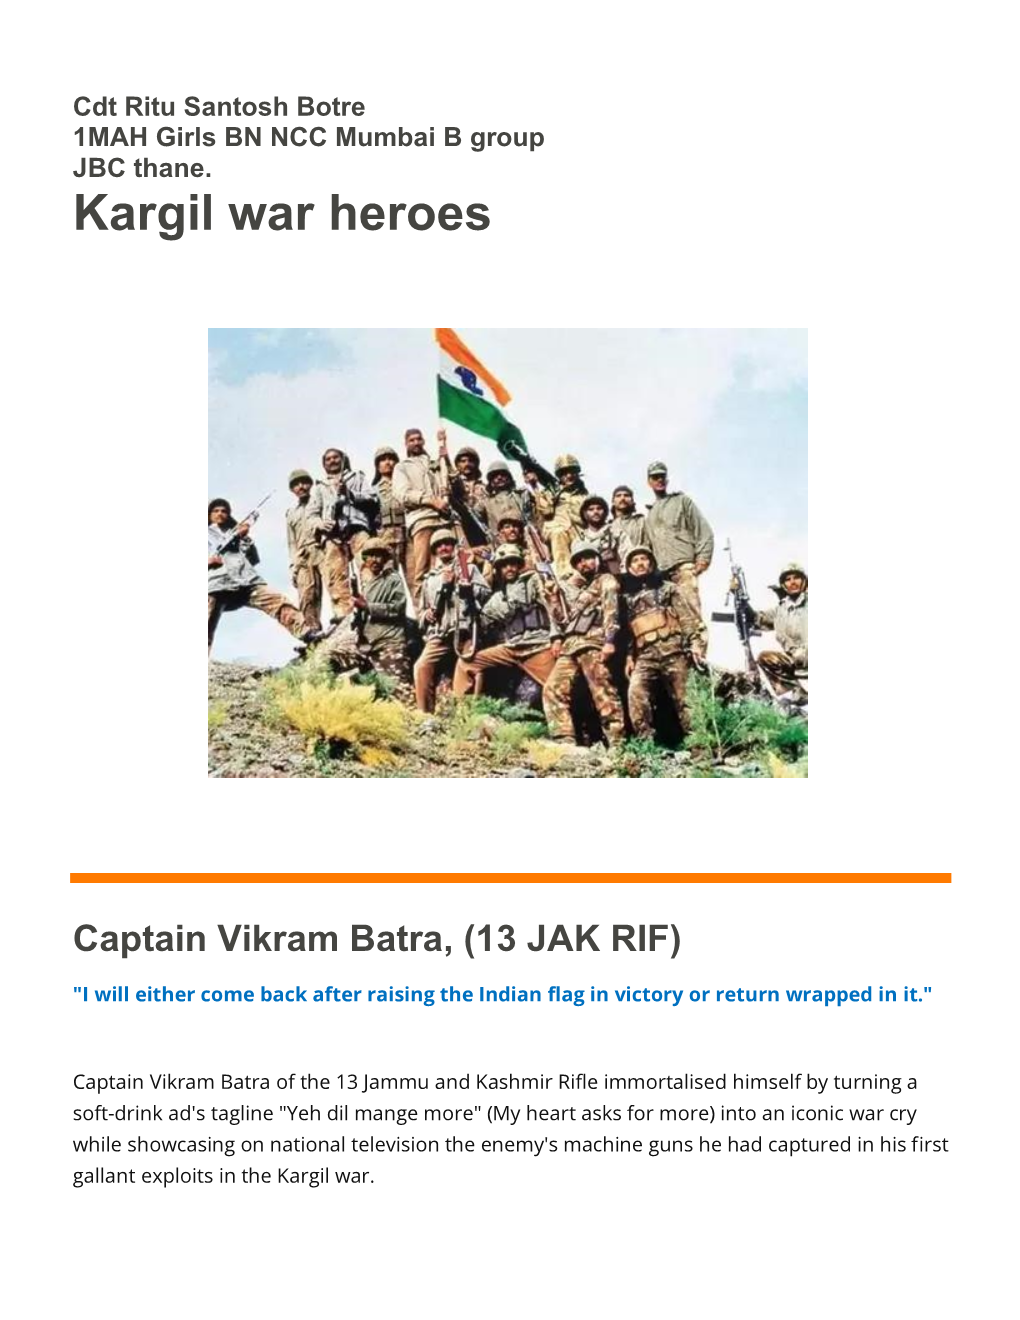 Kargil War Heroes